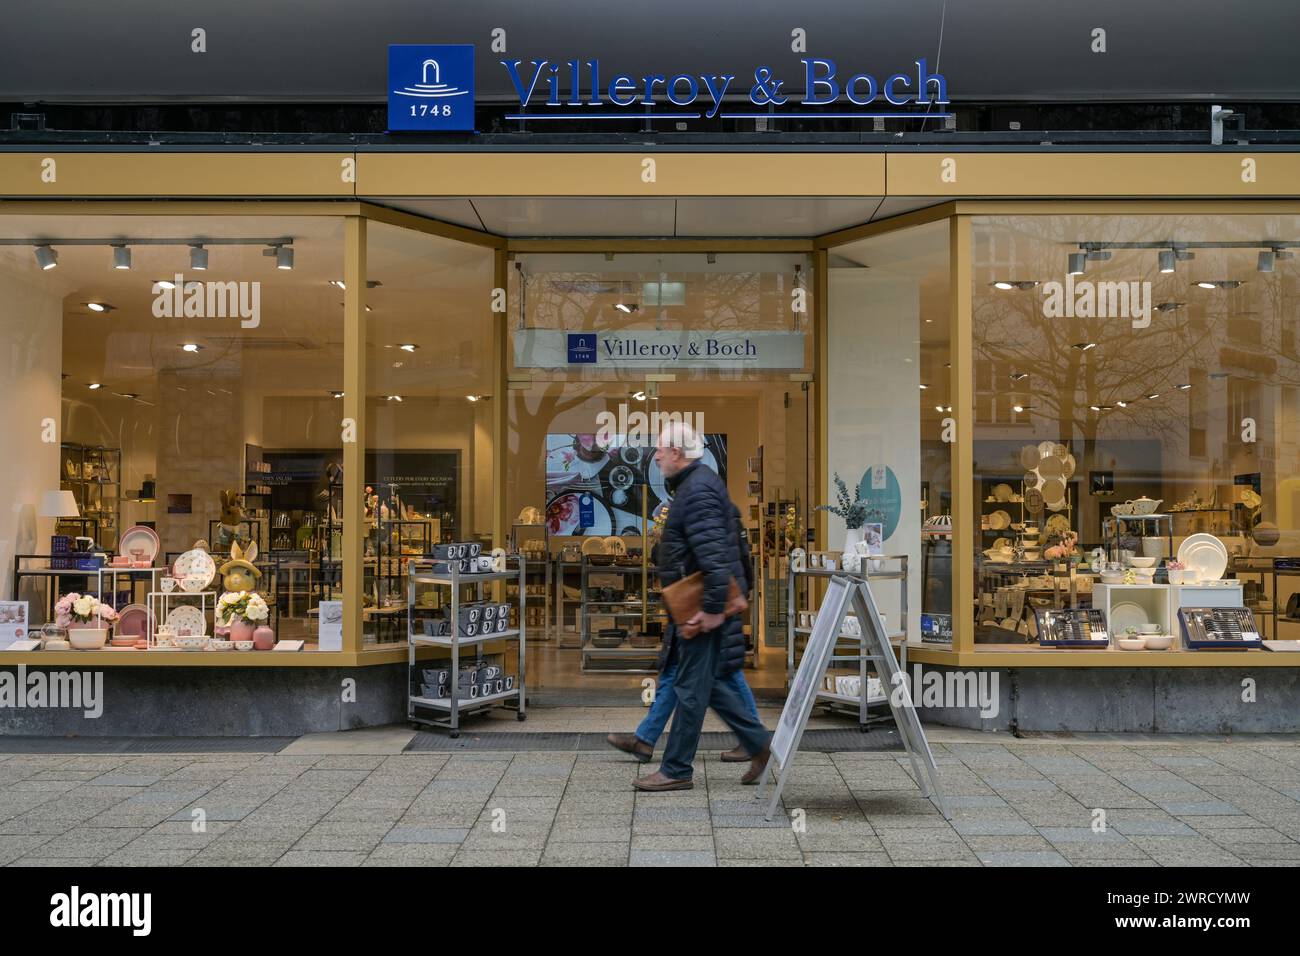 Villeroy & Boch, Geschäft, Kurfürstendamm, Charlottenburg, Berlin, Deutschland Banque D'Images